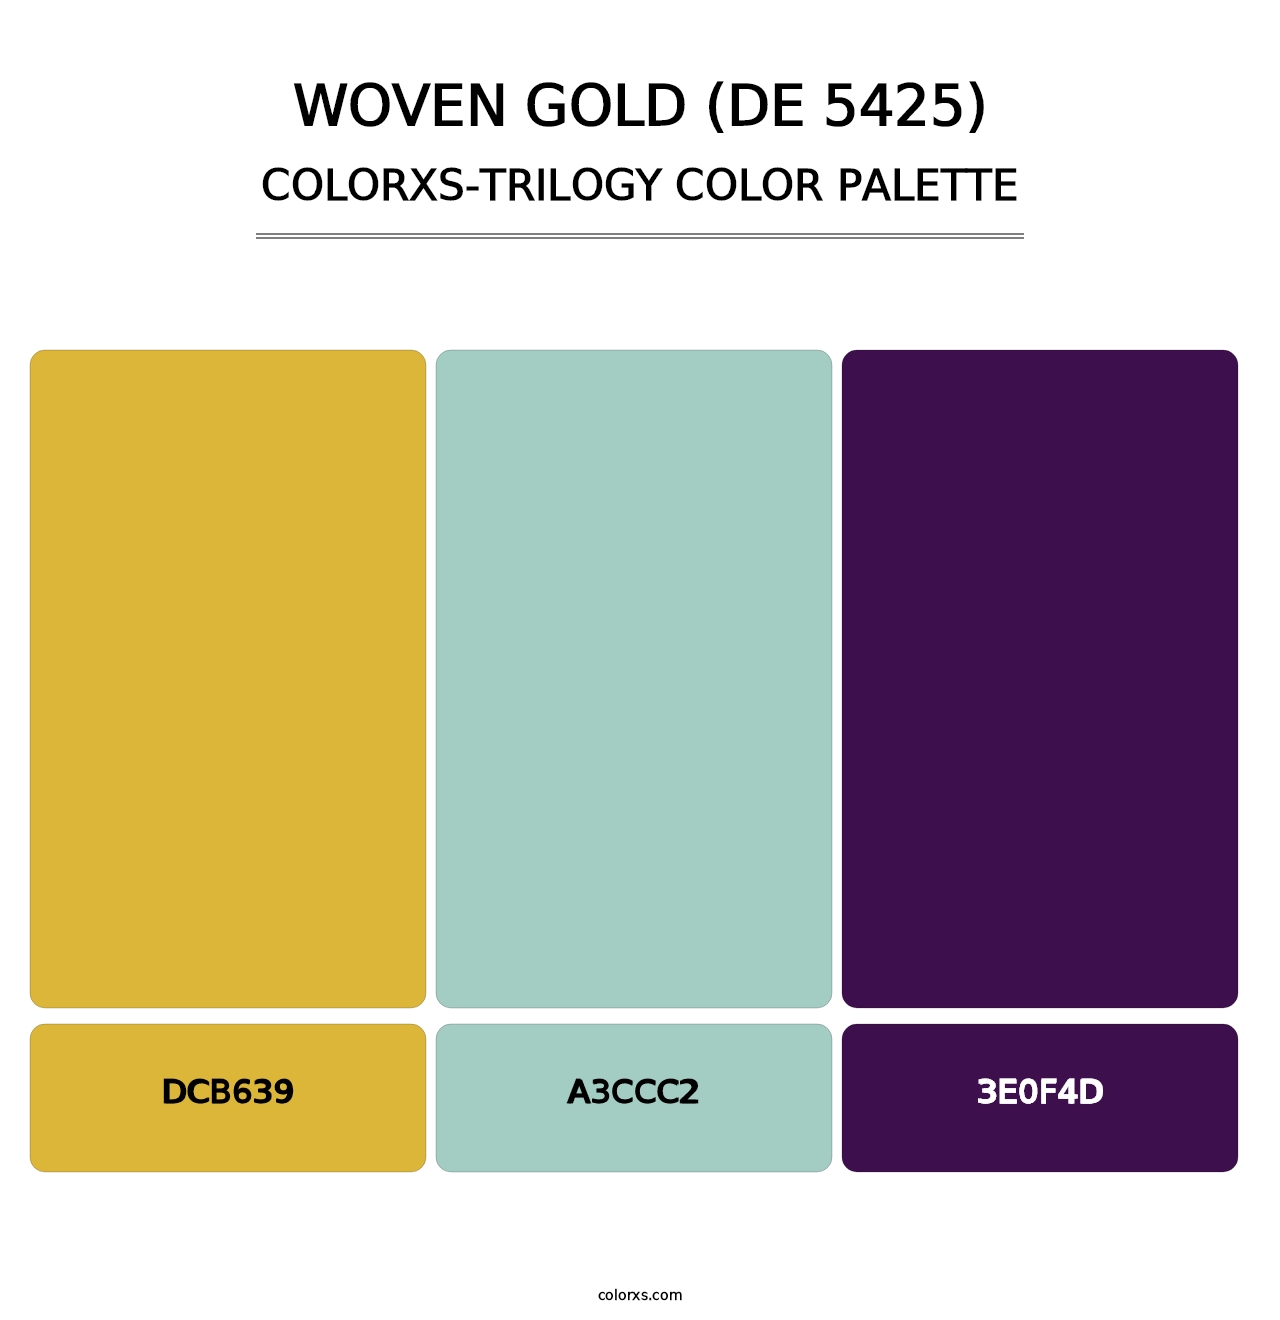 Woven Gold (DE 5425) - Colorxs Trilogy Palette